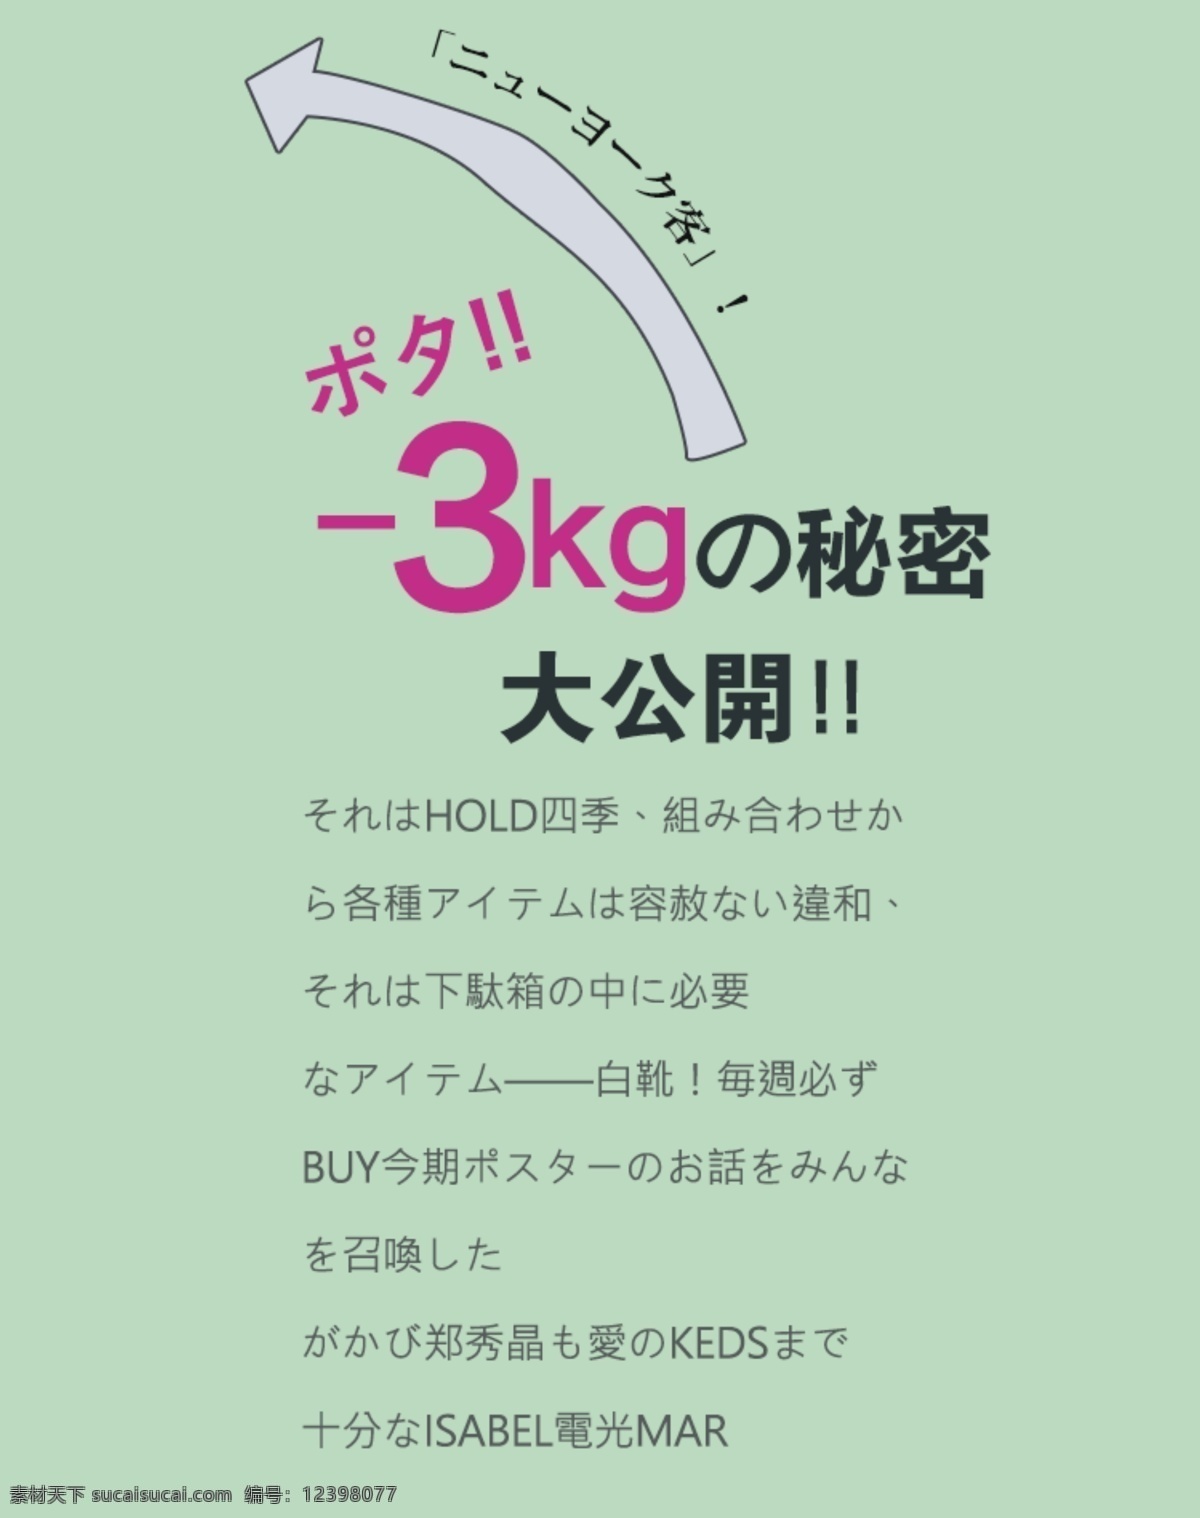 日系杂志排版 日文排版 排版样式 日文 psd素材 排版设计 文字排版 日系字体排版 封面排版 日系排版 字体排版 日系字体 字体样式 日本 杂志排版 绿色